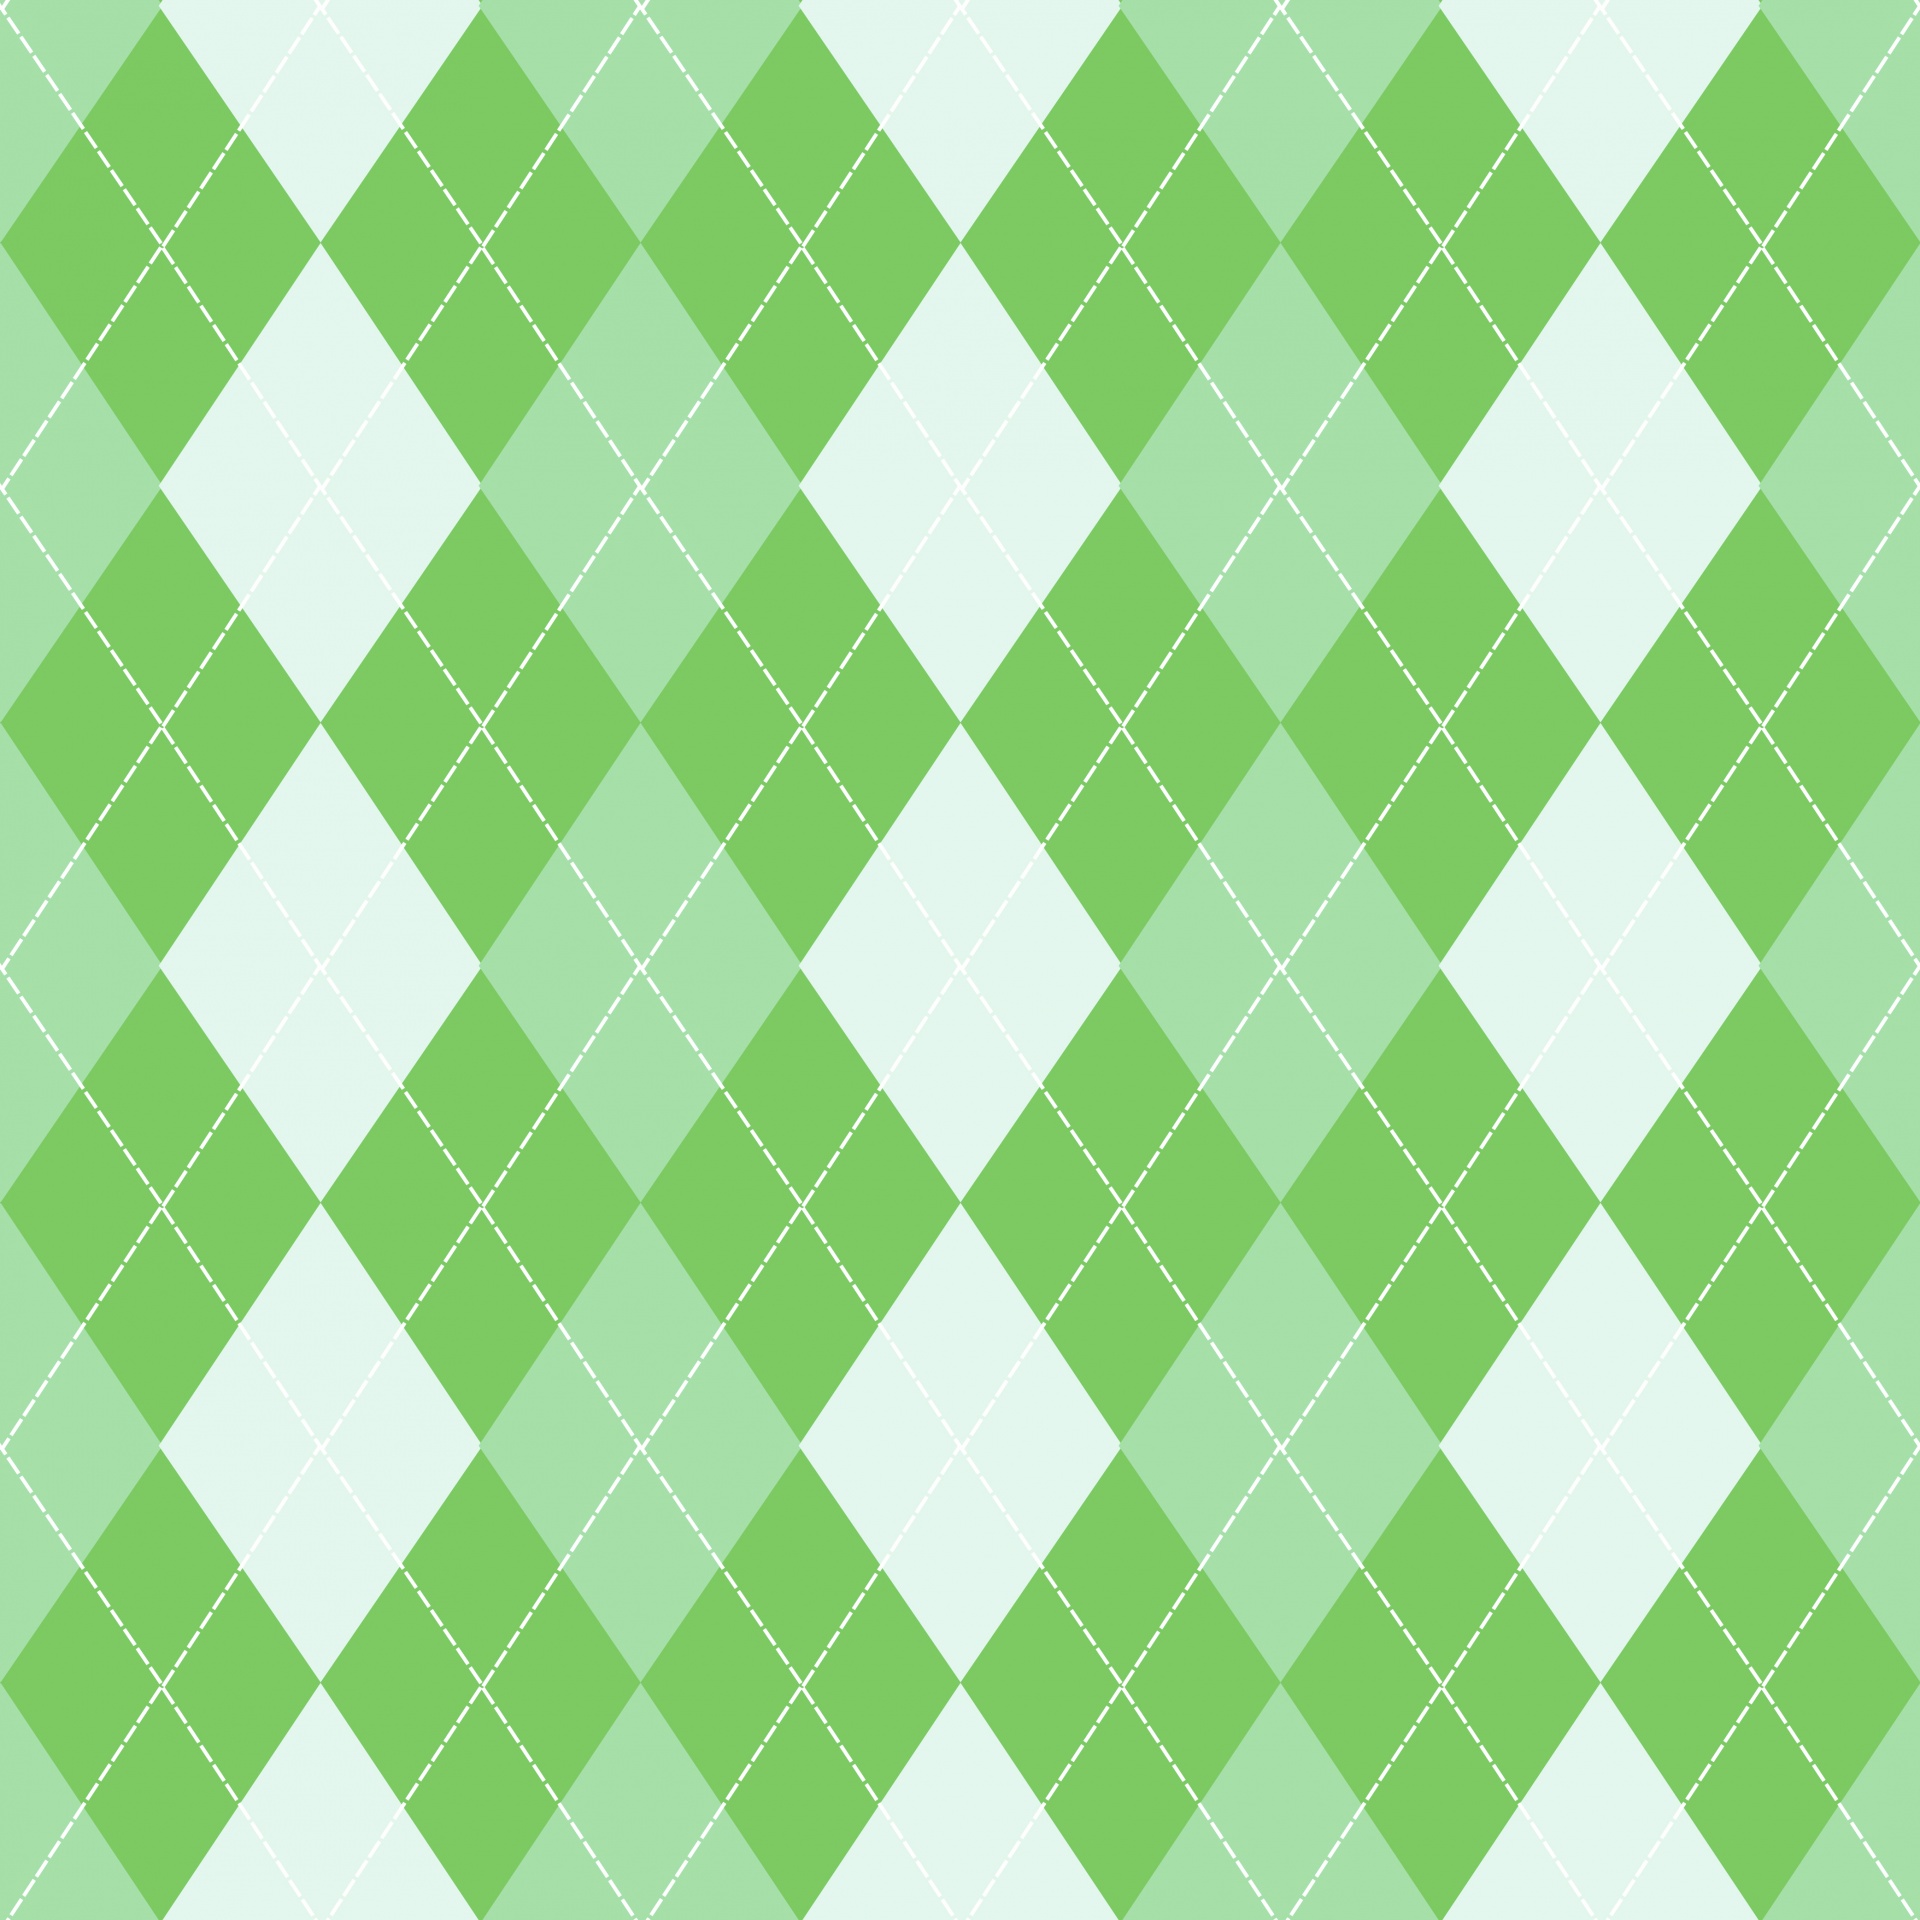 菱形背景绿色模式